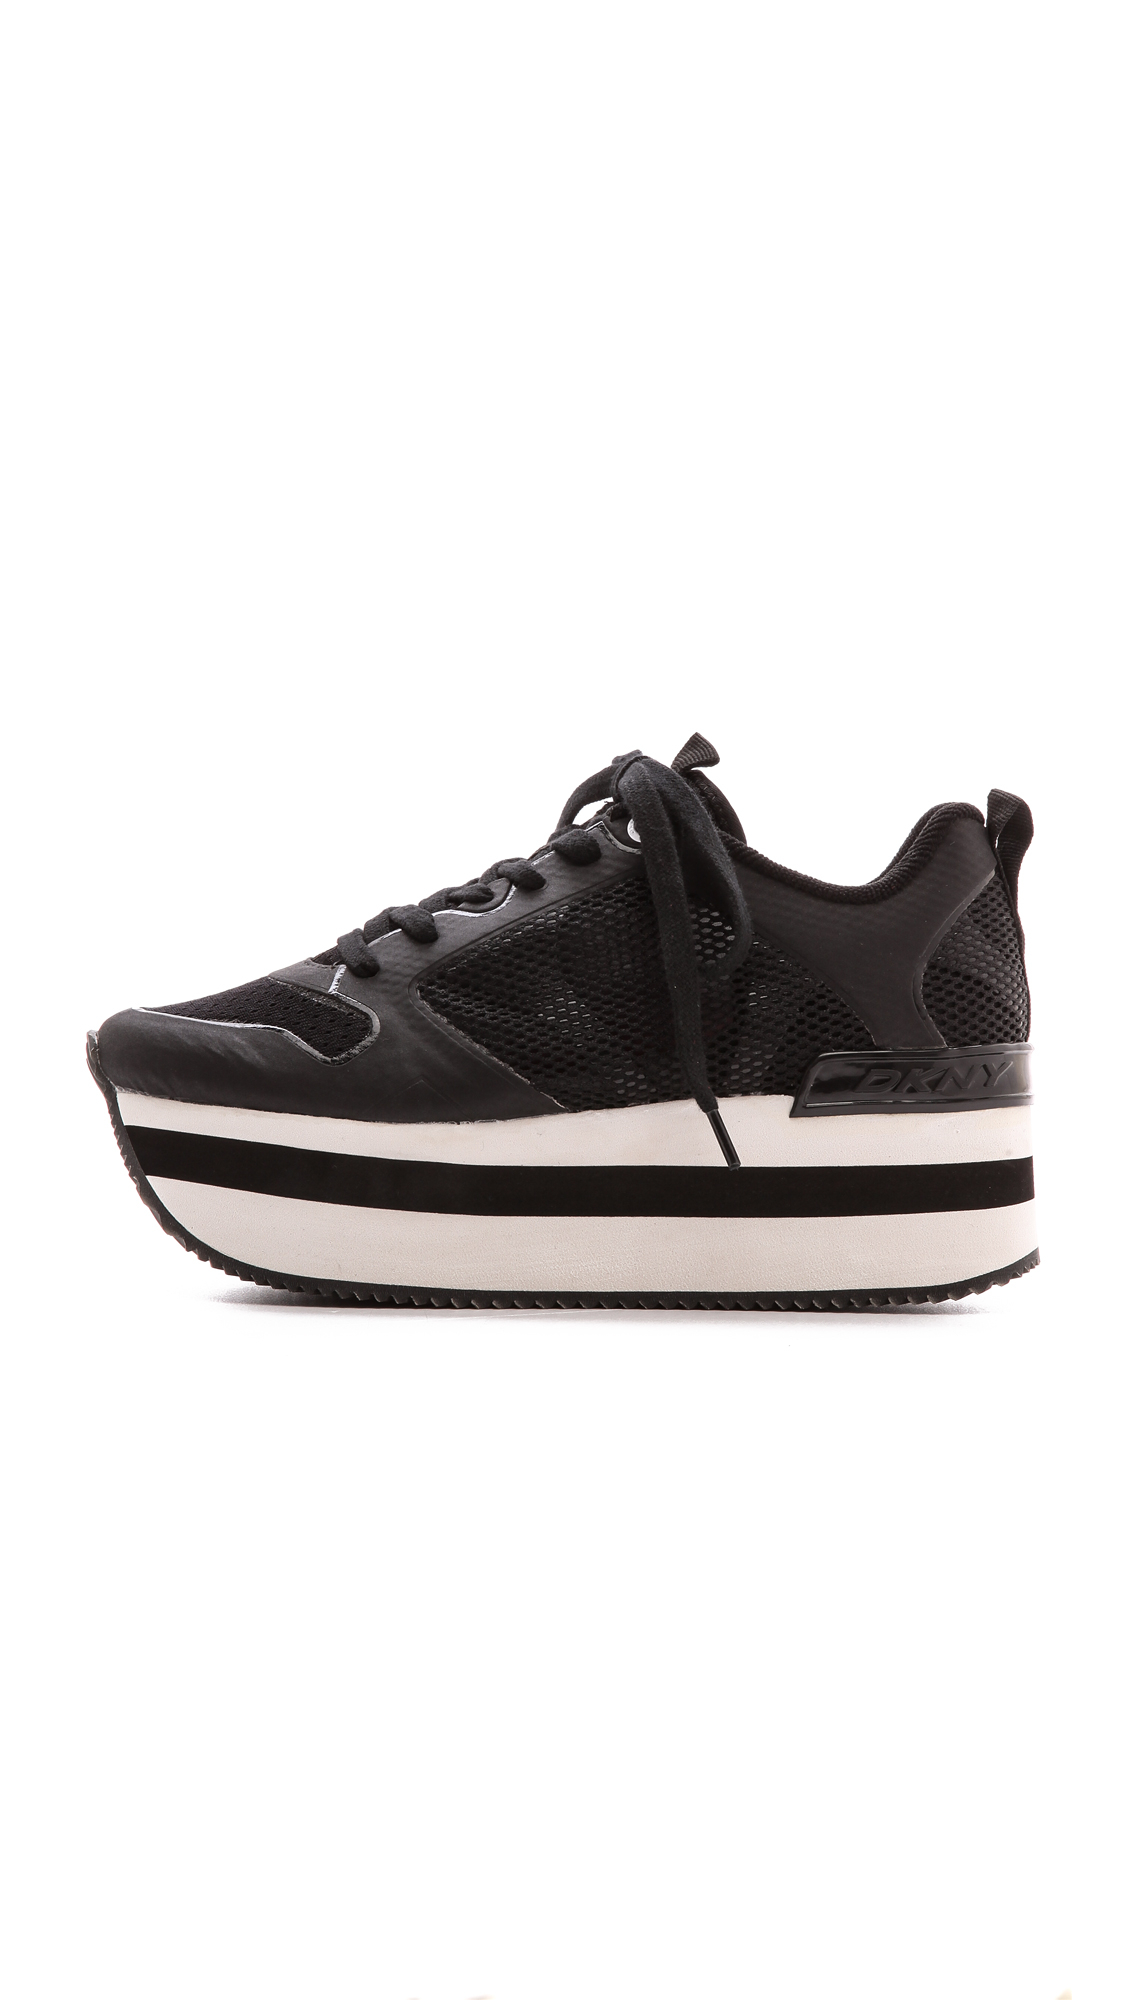 Lyst - Dkny Jessica Runway Platform Sneakers - Black in Black